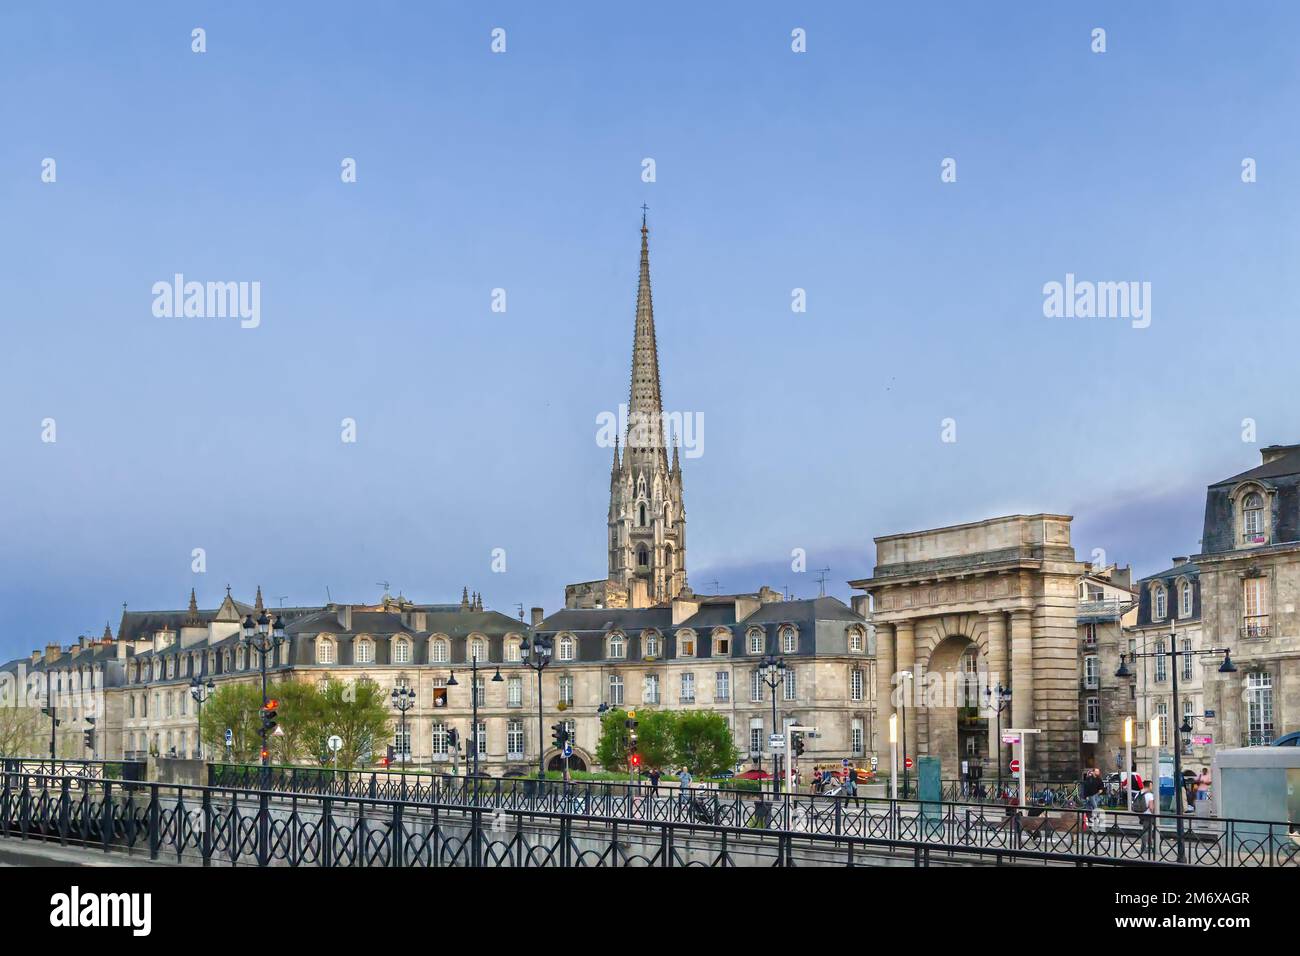 Bourgogne gate, Bordeaux, France Stock Photo